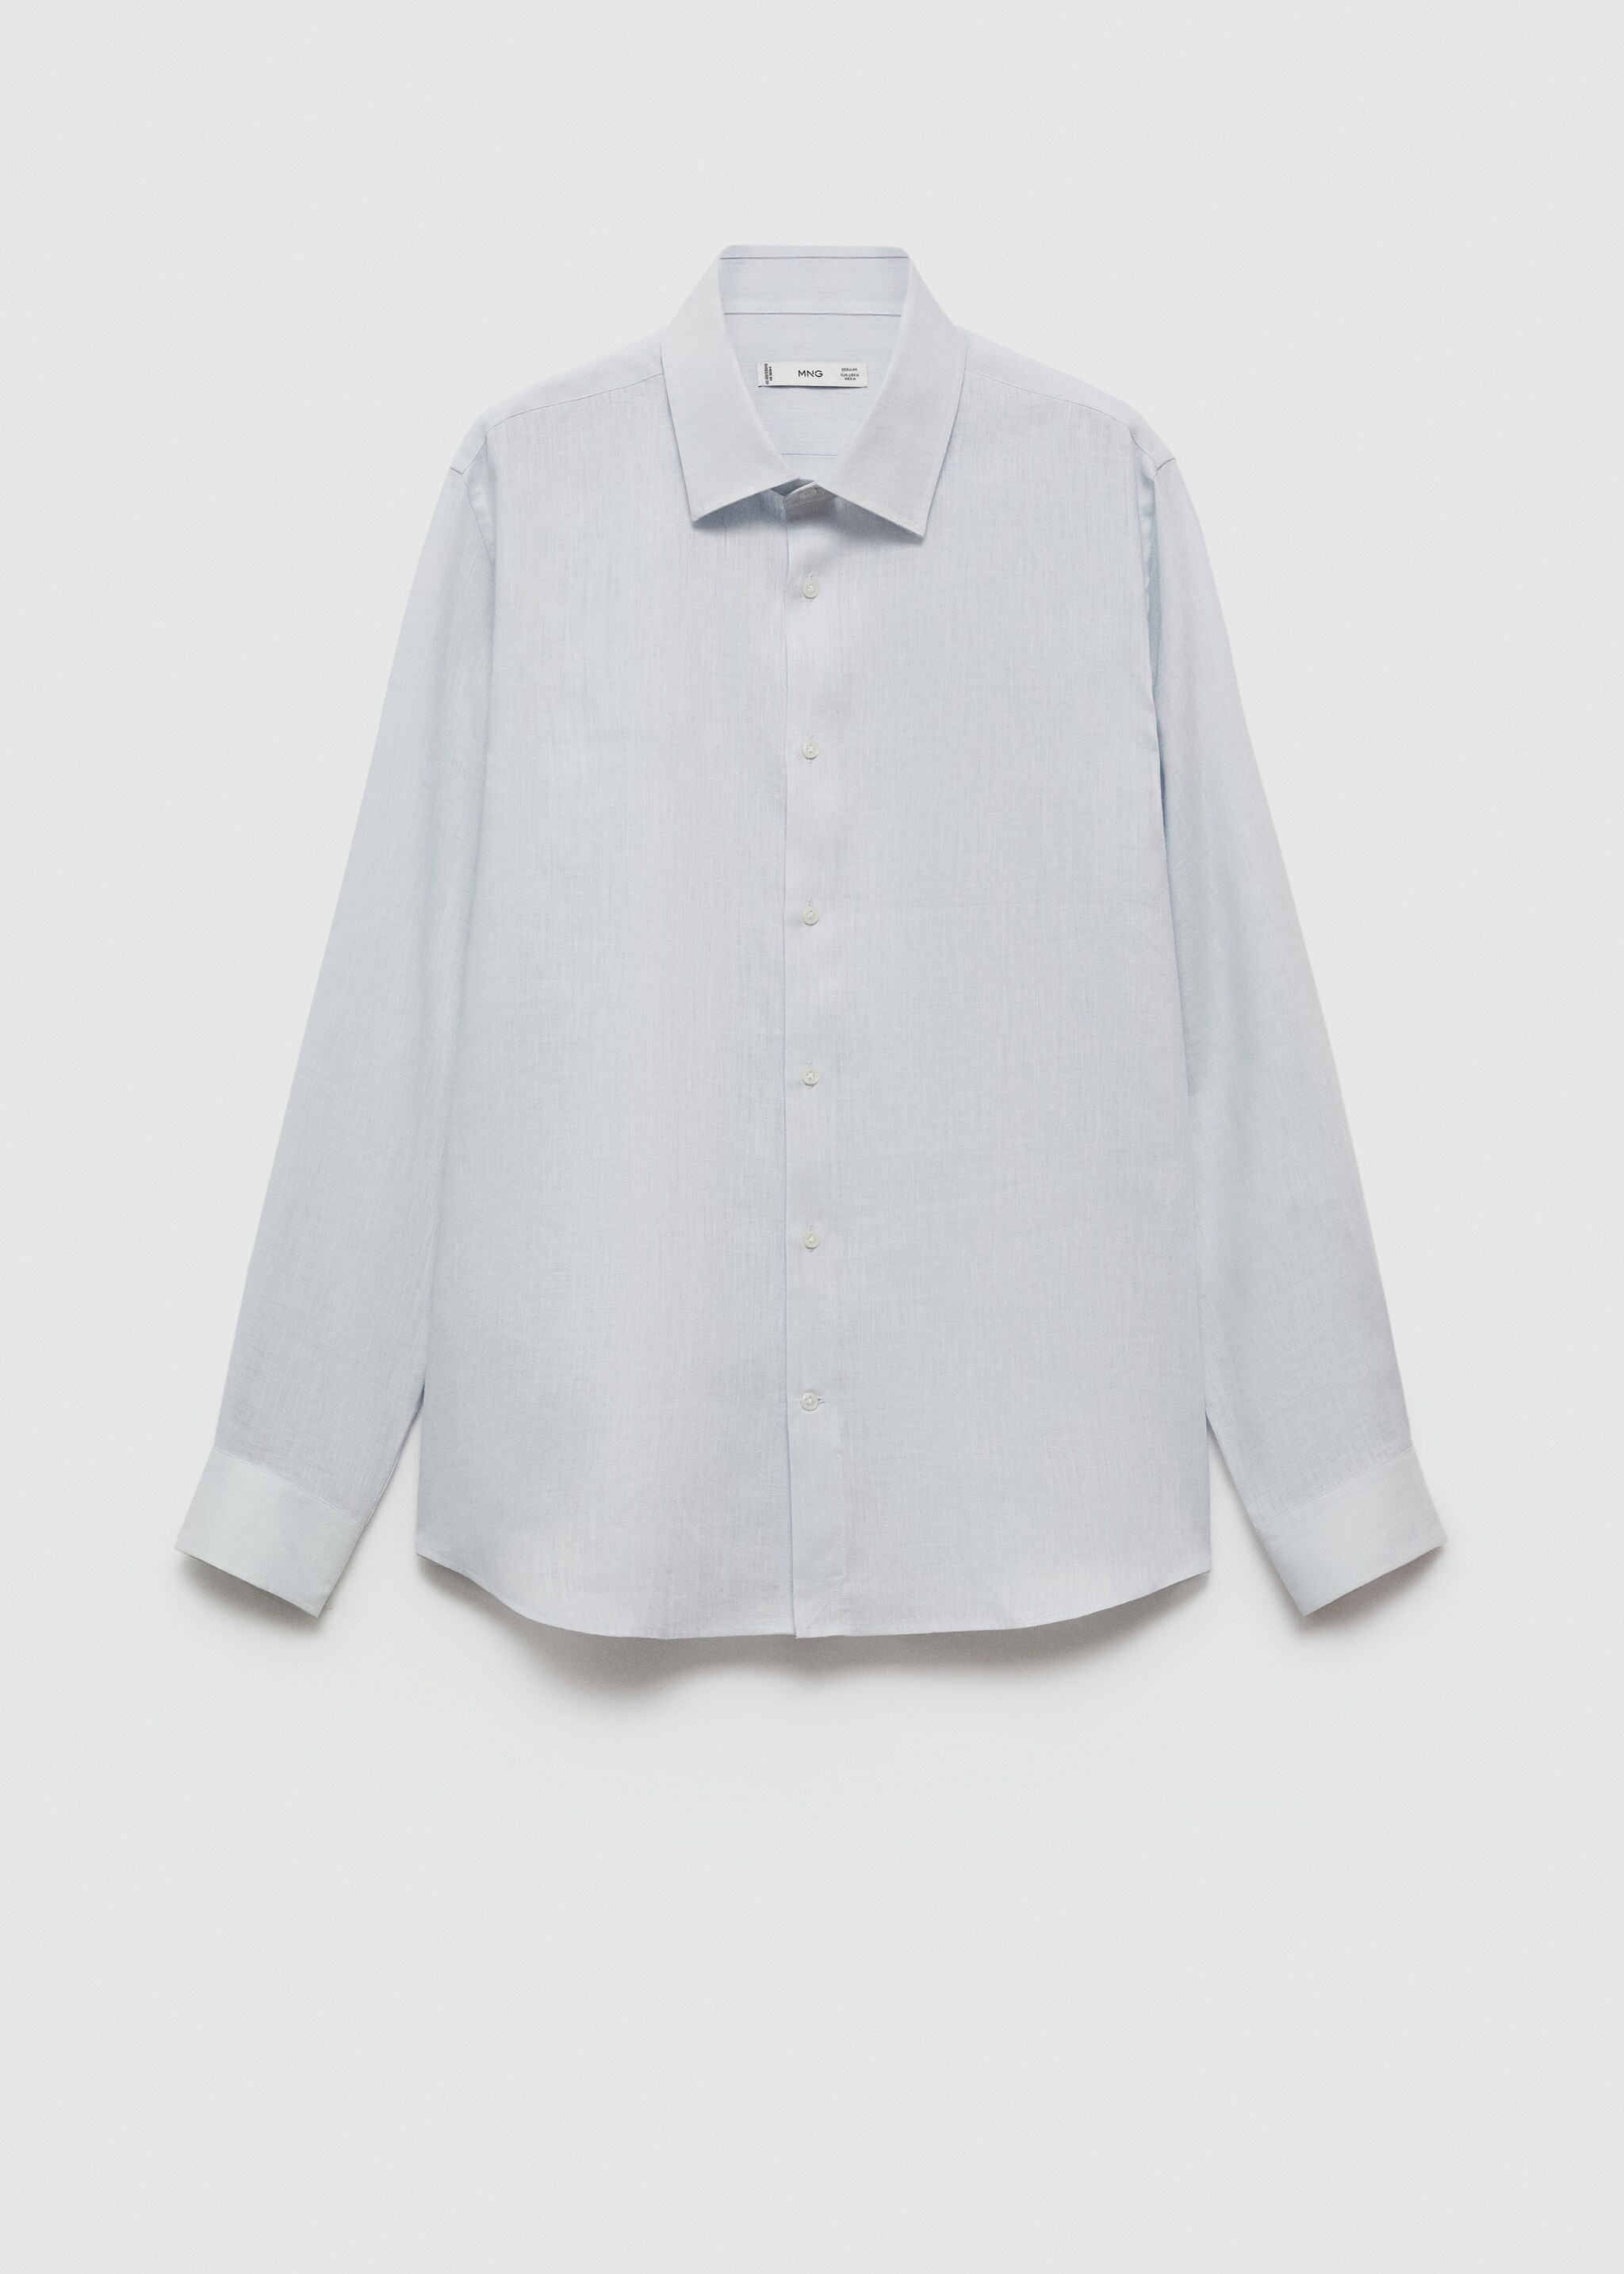 Camisa regular fit 100% lino - Artículo sin modelo